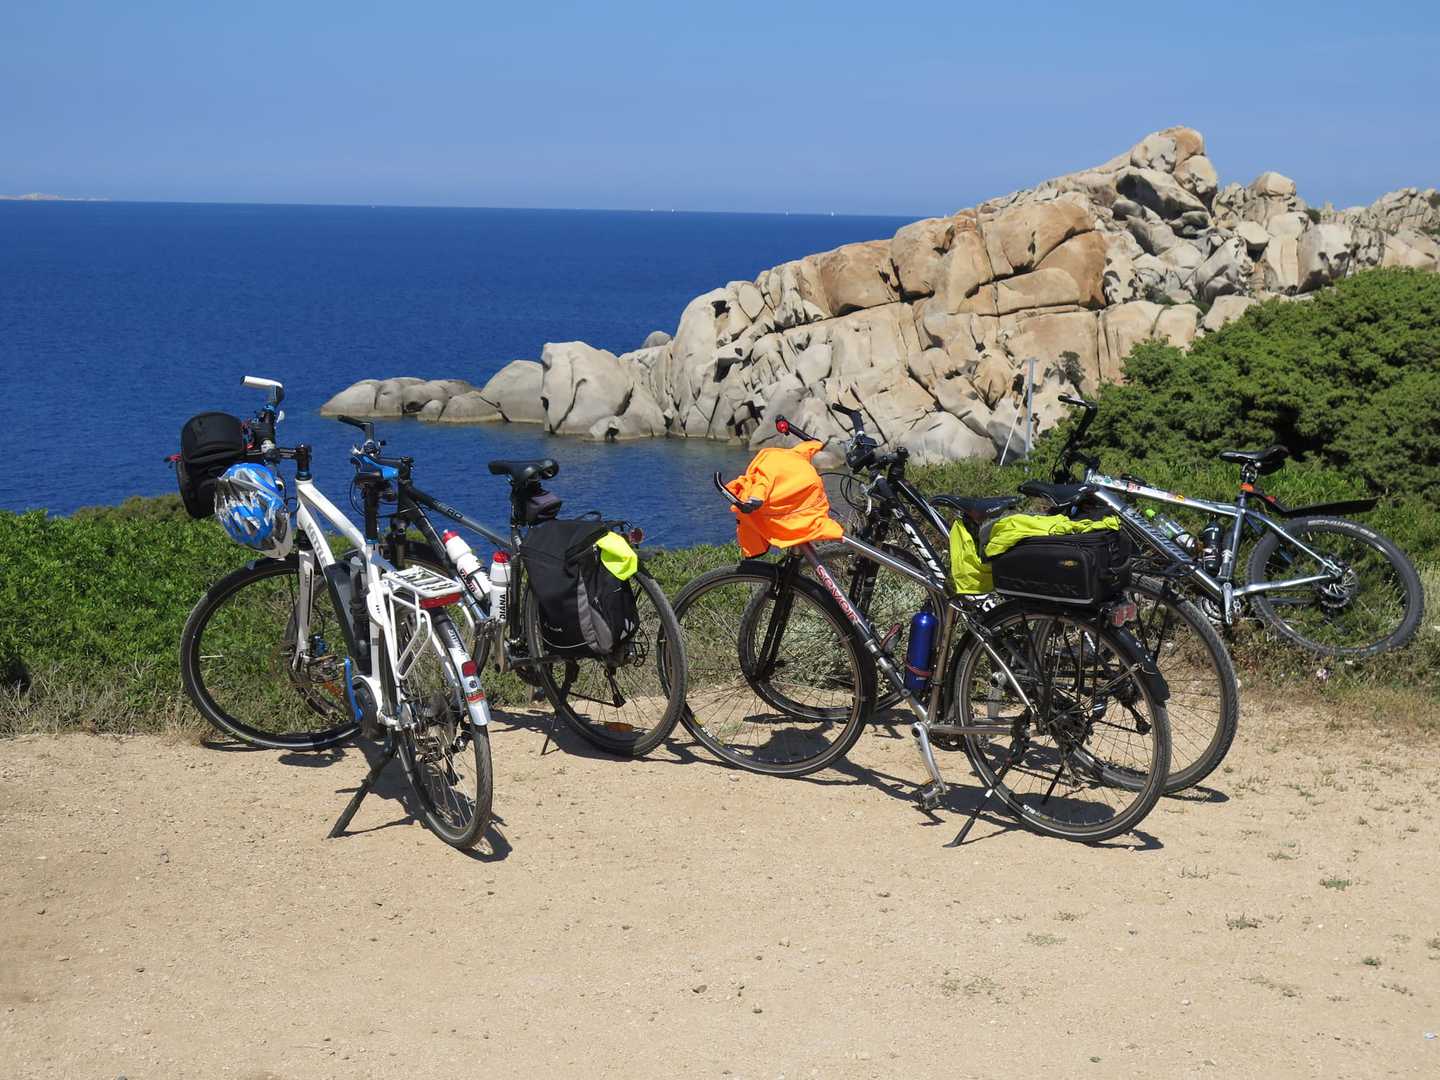 Radreise Italien Sardinien, mehrere Räder mit bunten Gepäckstücken an der sardischen Küste abgestellt mit Blick auf eine felsige Landzunge, die ins blaue Meer ragt